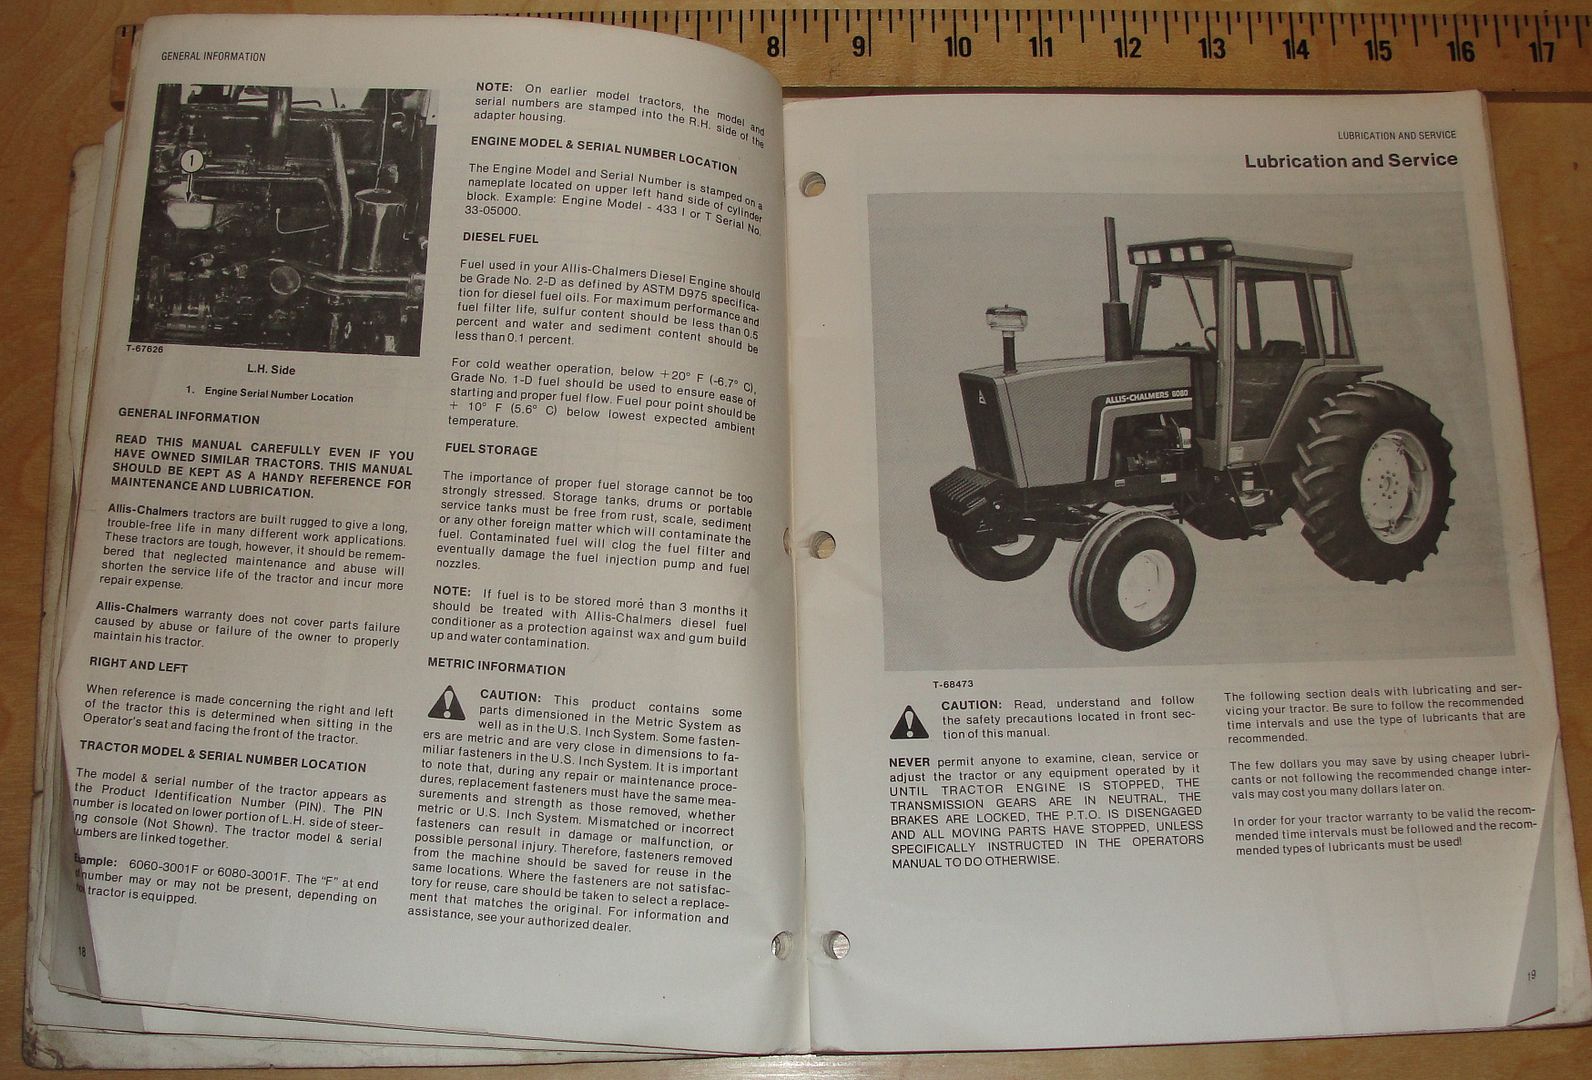 6060- 6080 Diesel tractor operators manual Allis-Chalmers